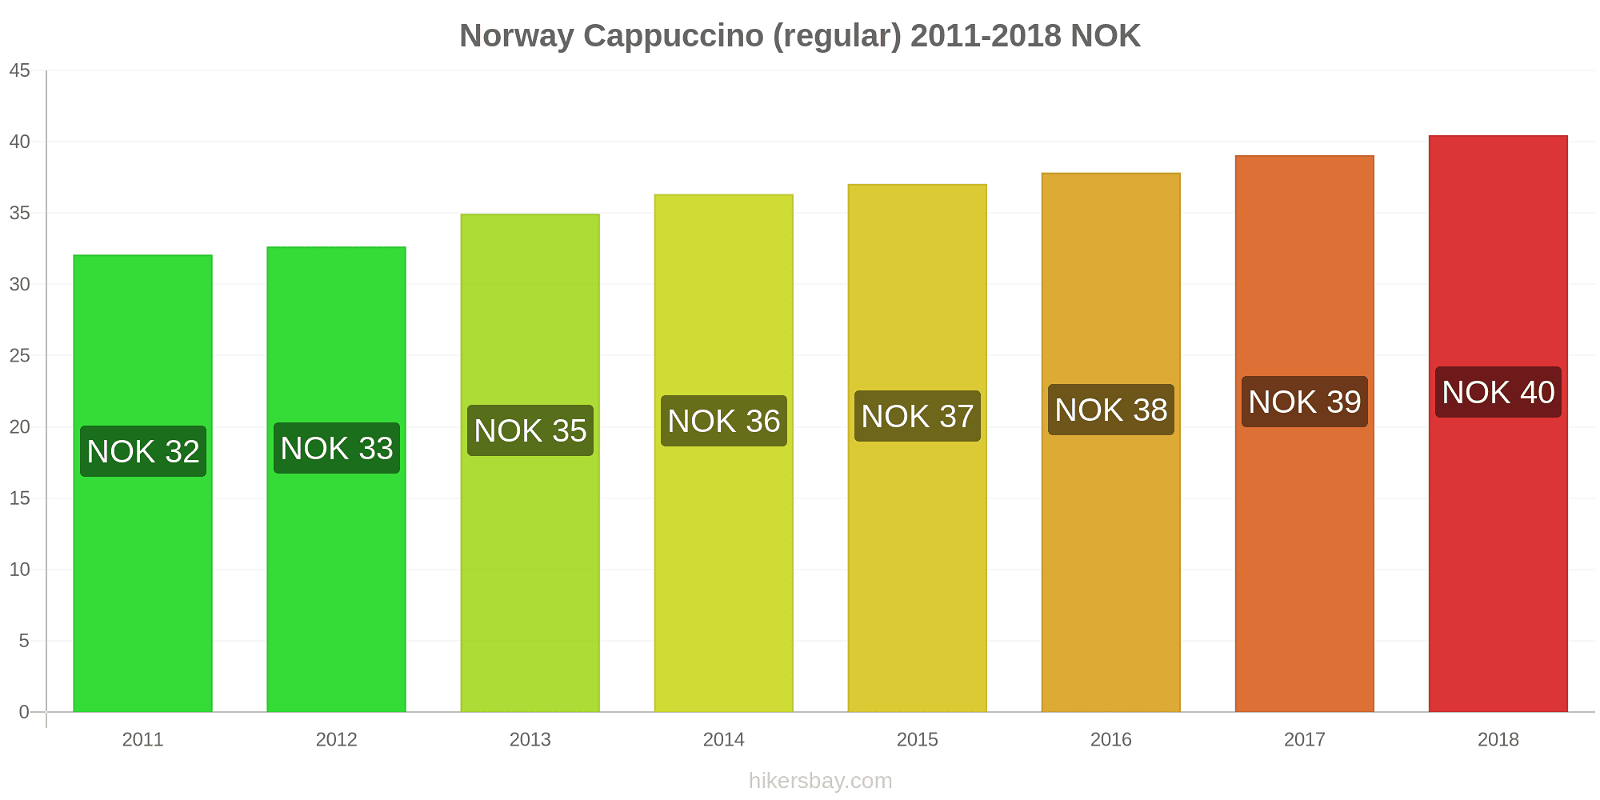 Norway price changes Cappuccino hikersbay.com